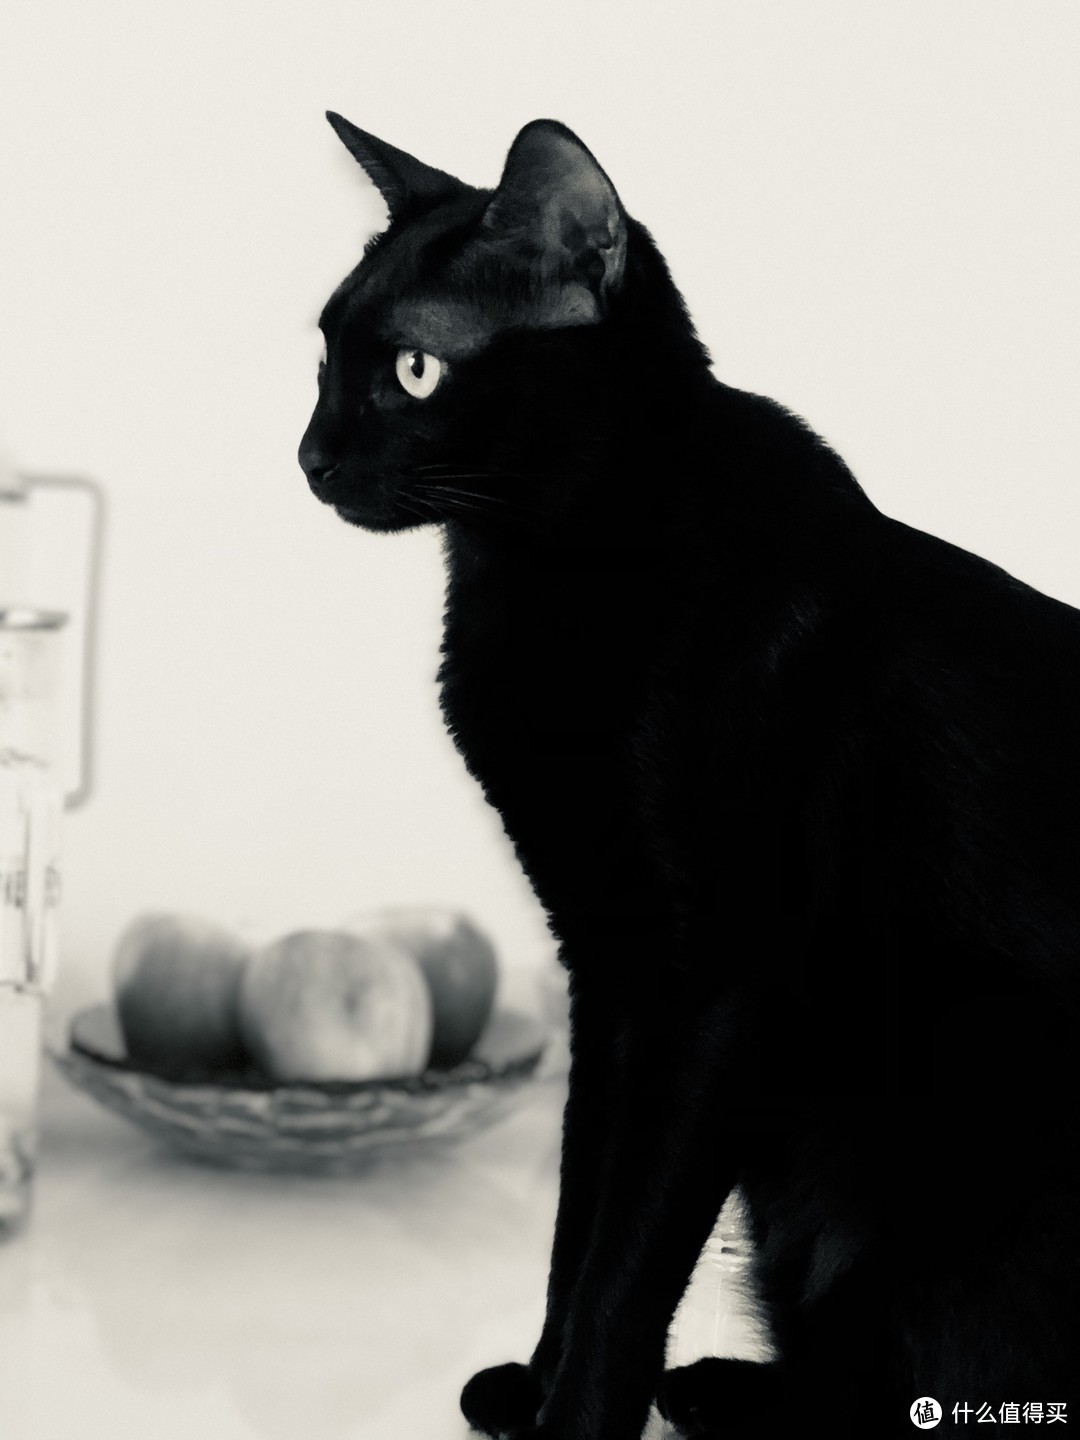 已经是一只优雅的黑猫了